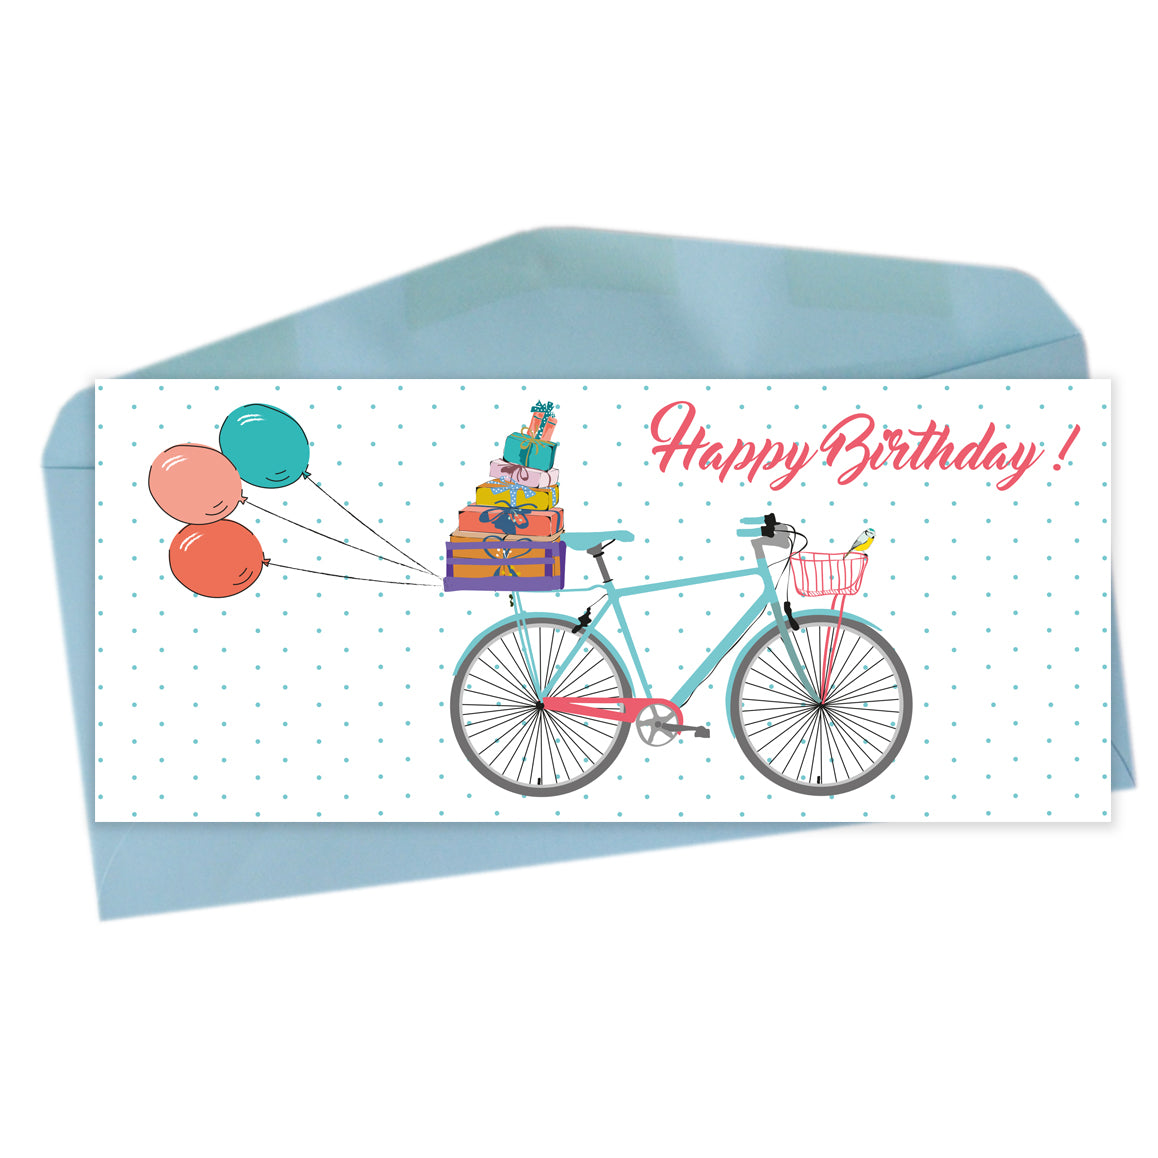 Happy birthday - bicycle